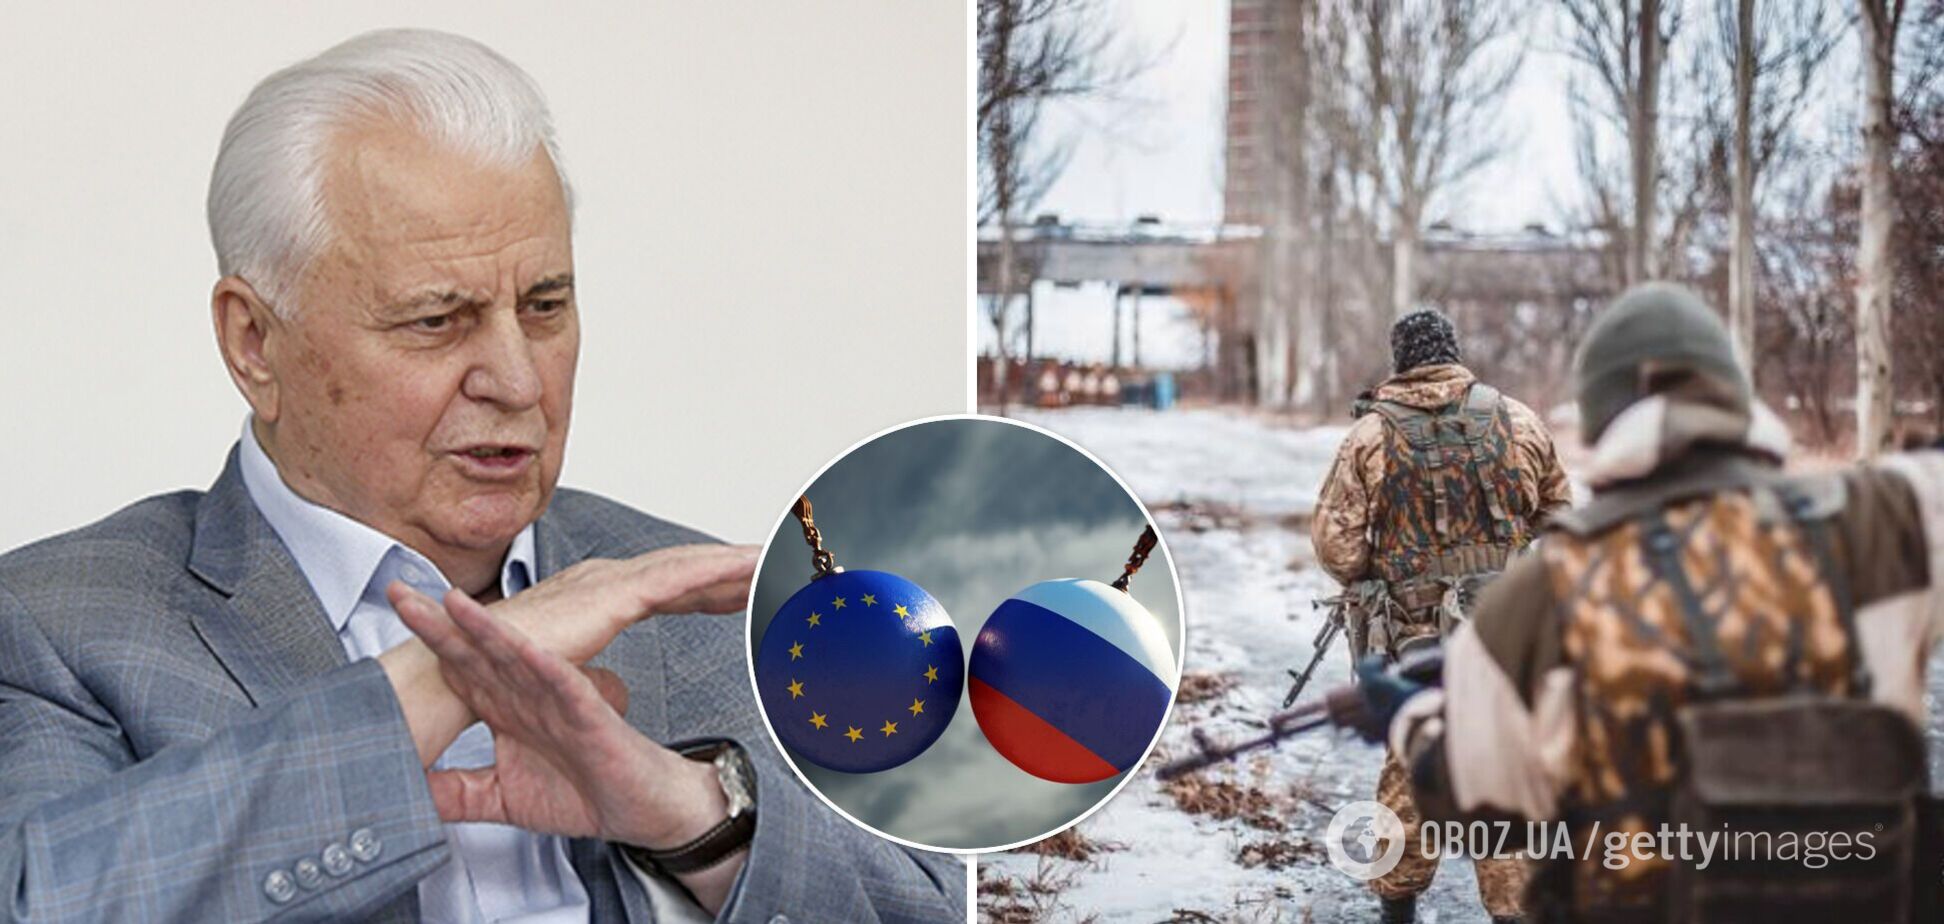 Кравчук призвал ЕС и США усилить санкции против РФ, чтобы прекратить обострение на Донбассе